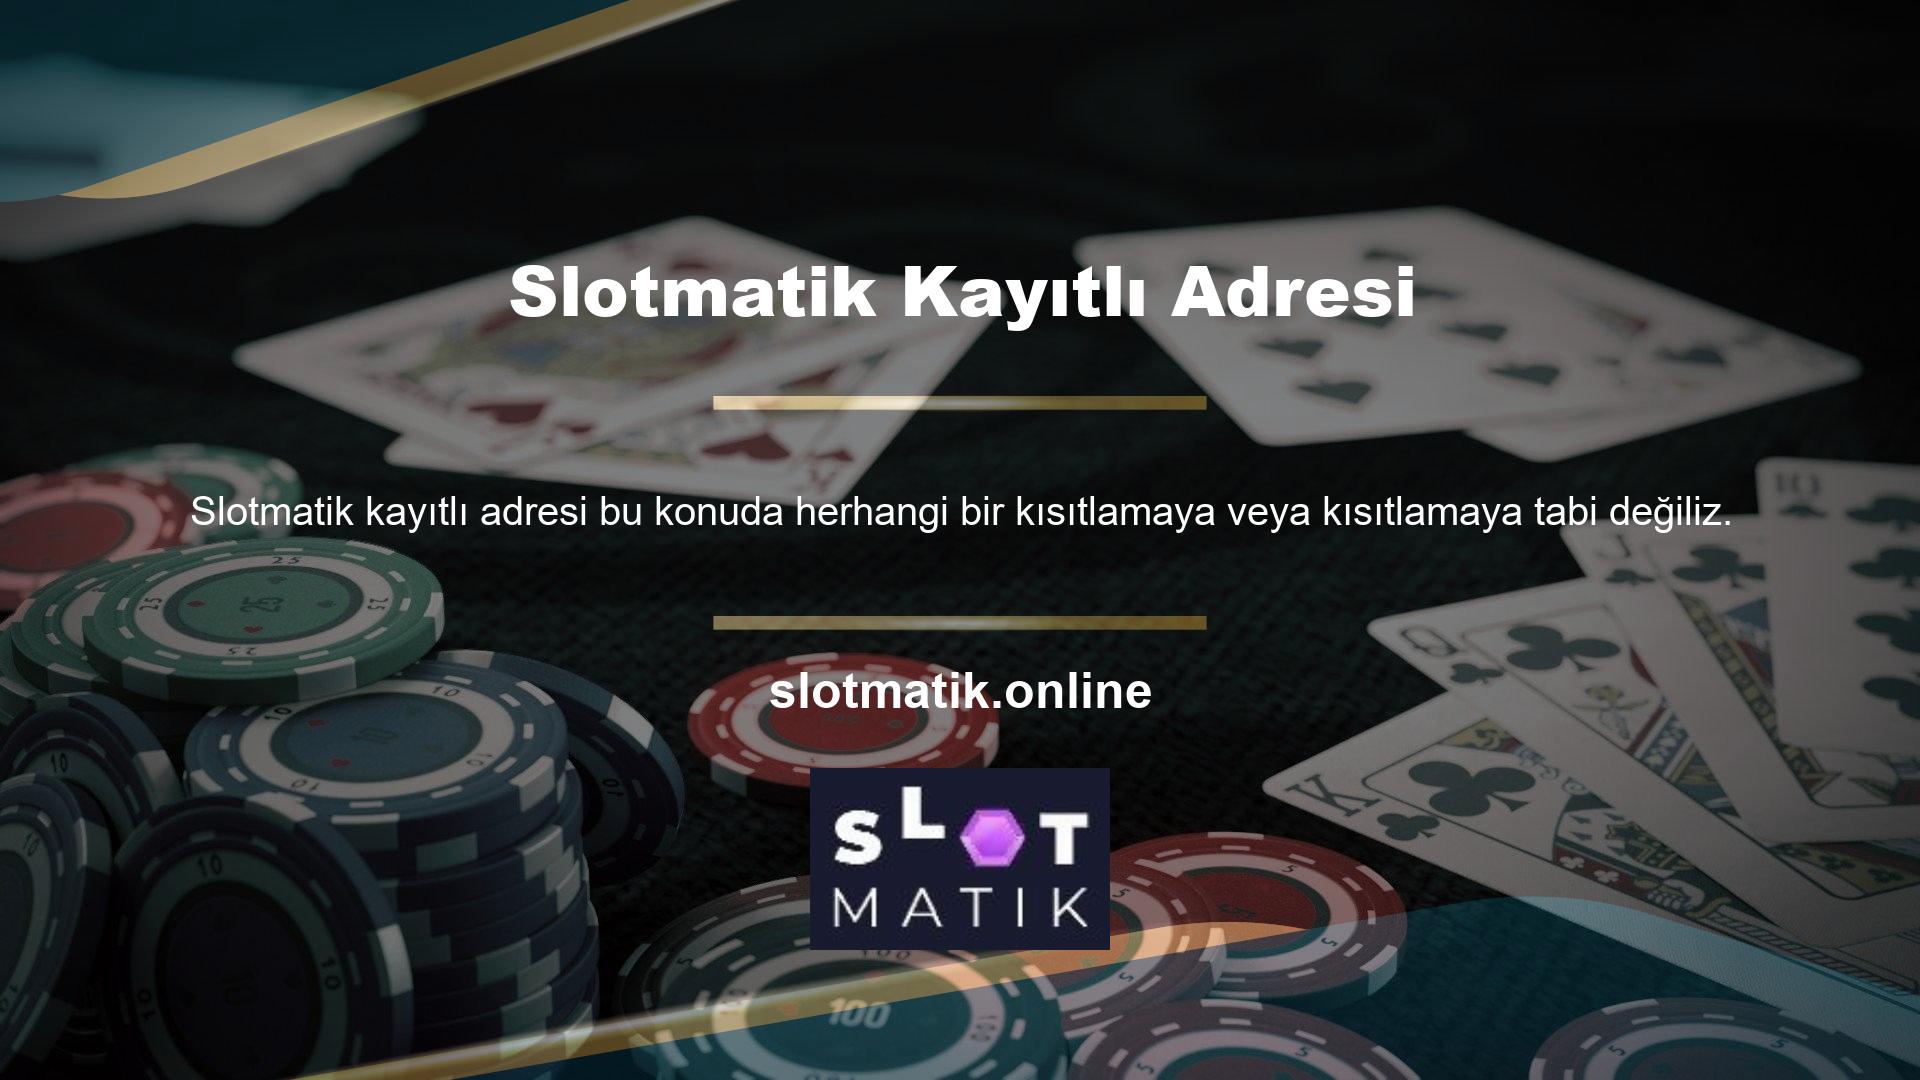 Slotmatik Home, kullanıcılara benzersiz bir rulet oynama fırsatı sunan çekici bir sitedir